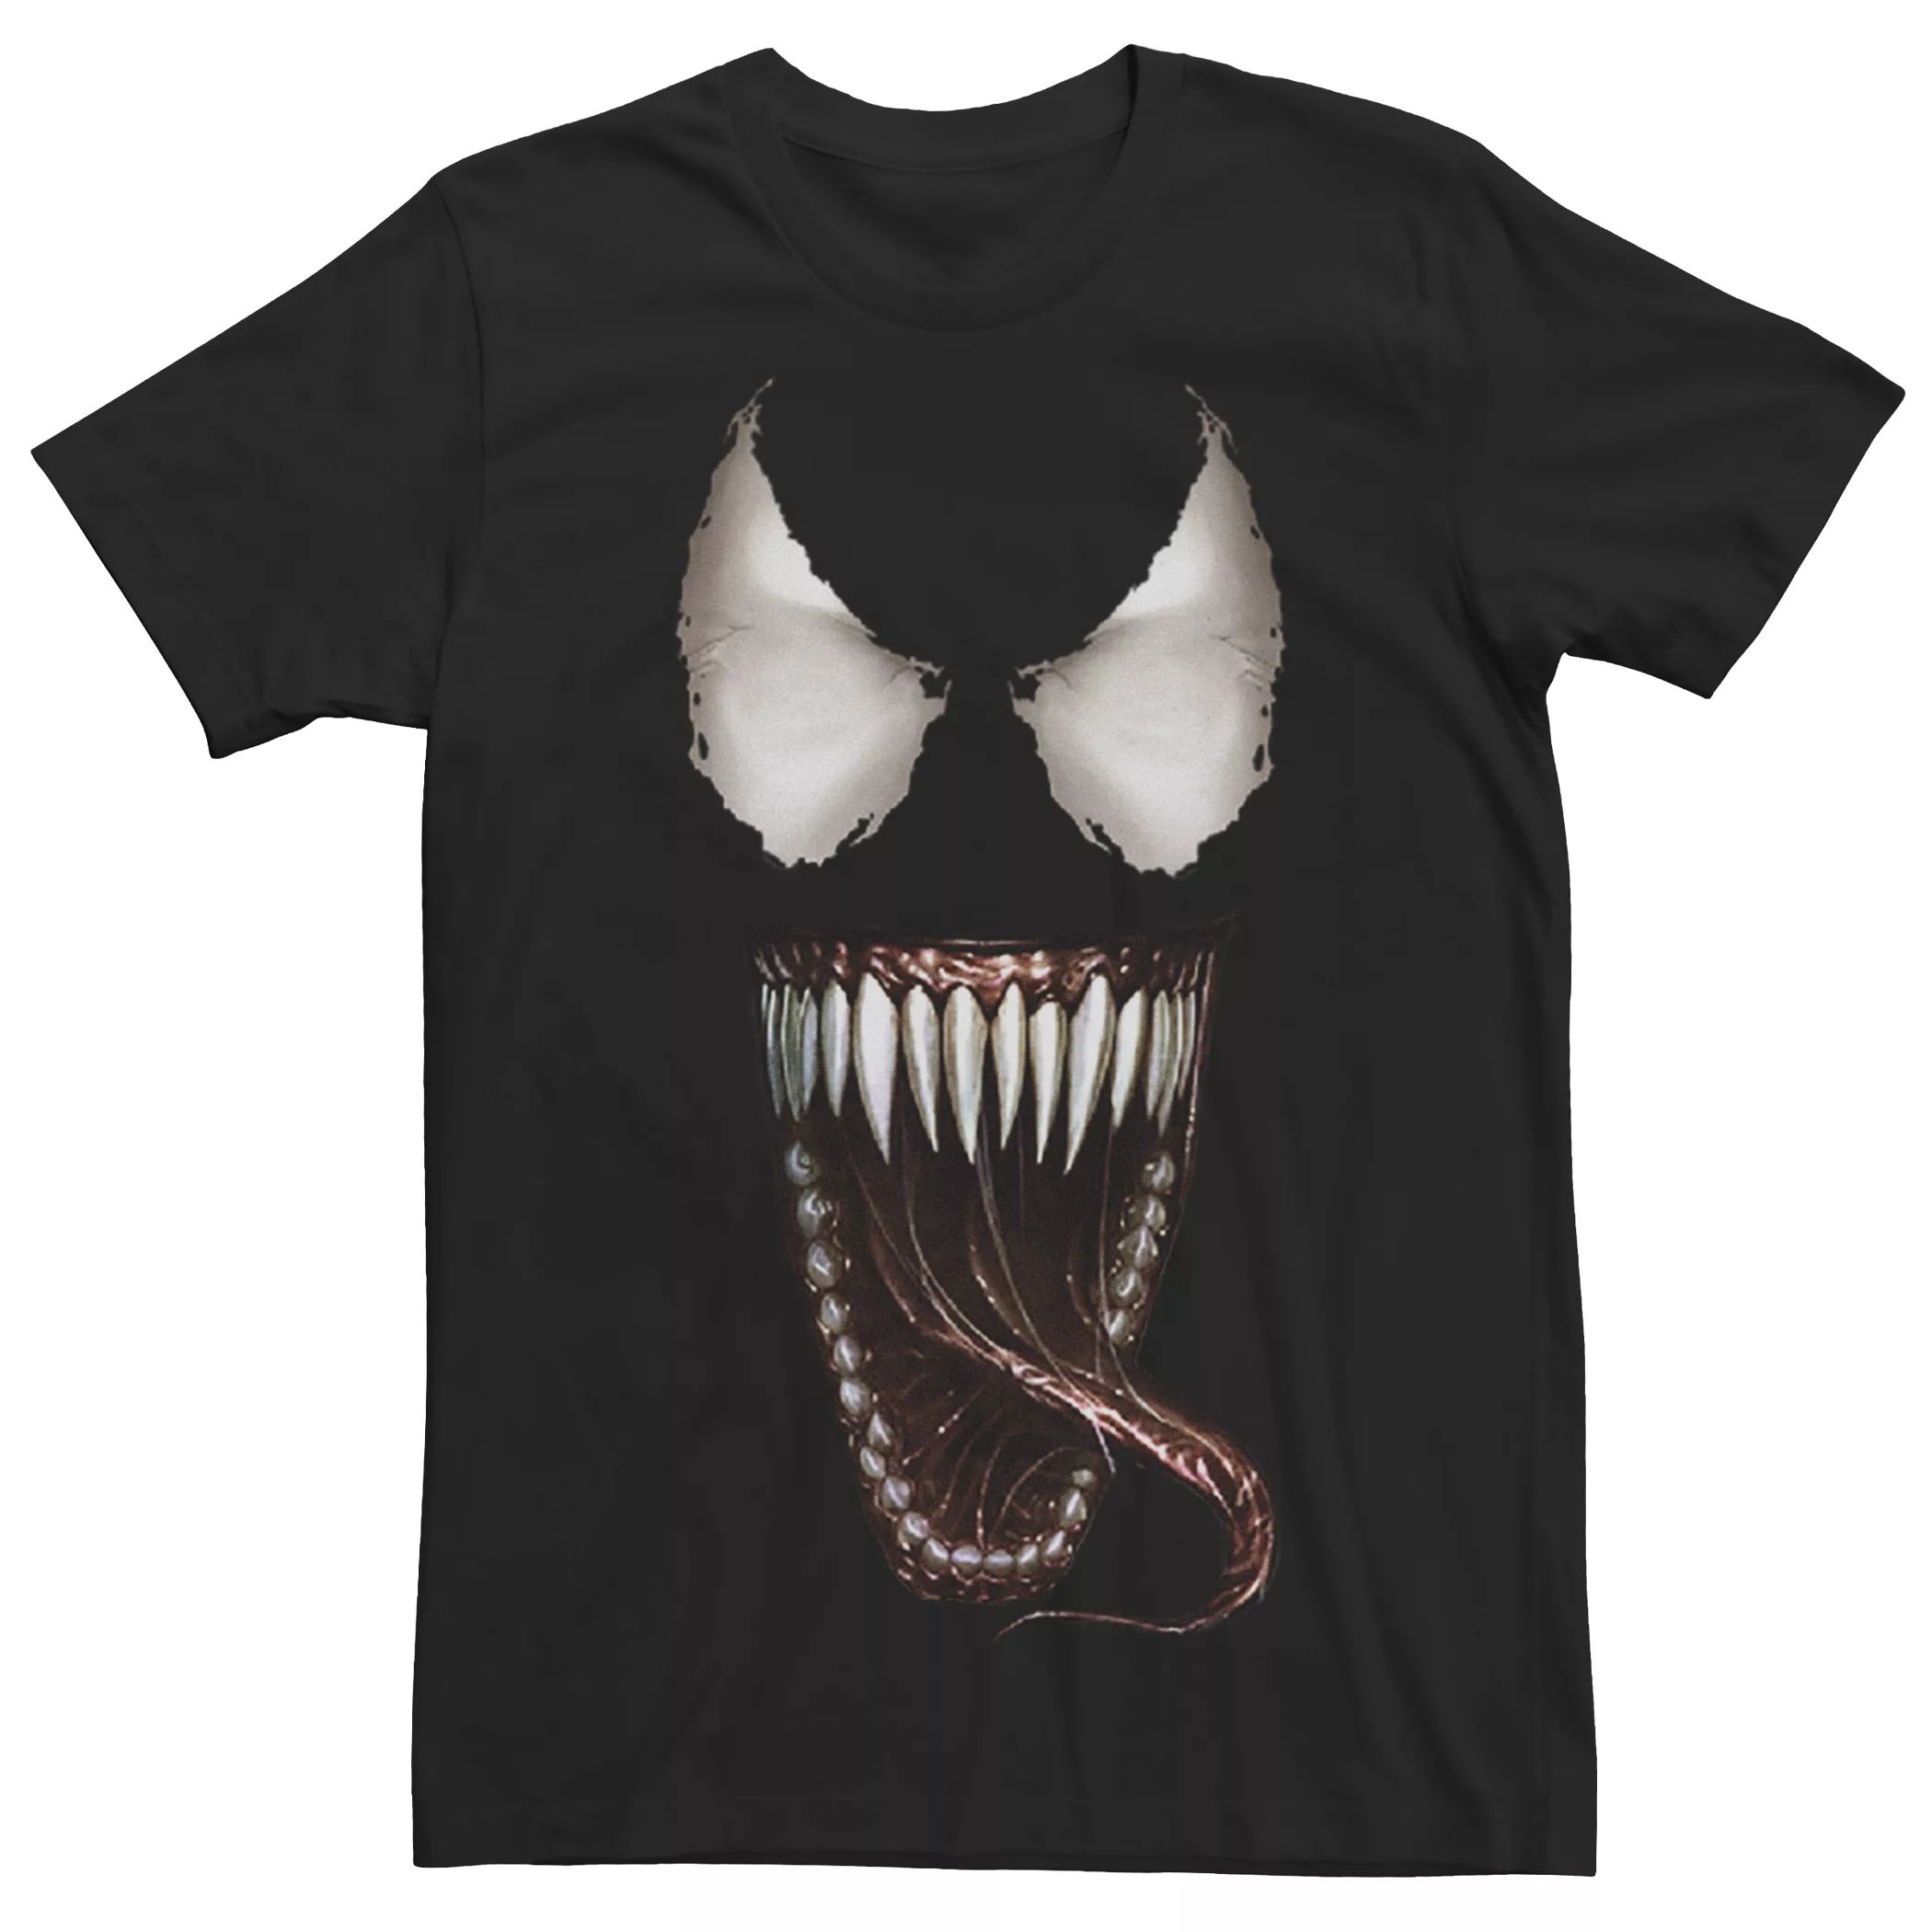 Мужская футболка с открытым ртом и рисунком Marvel Venom Face Licensed Character